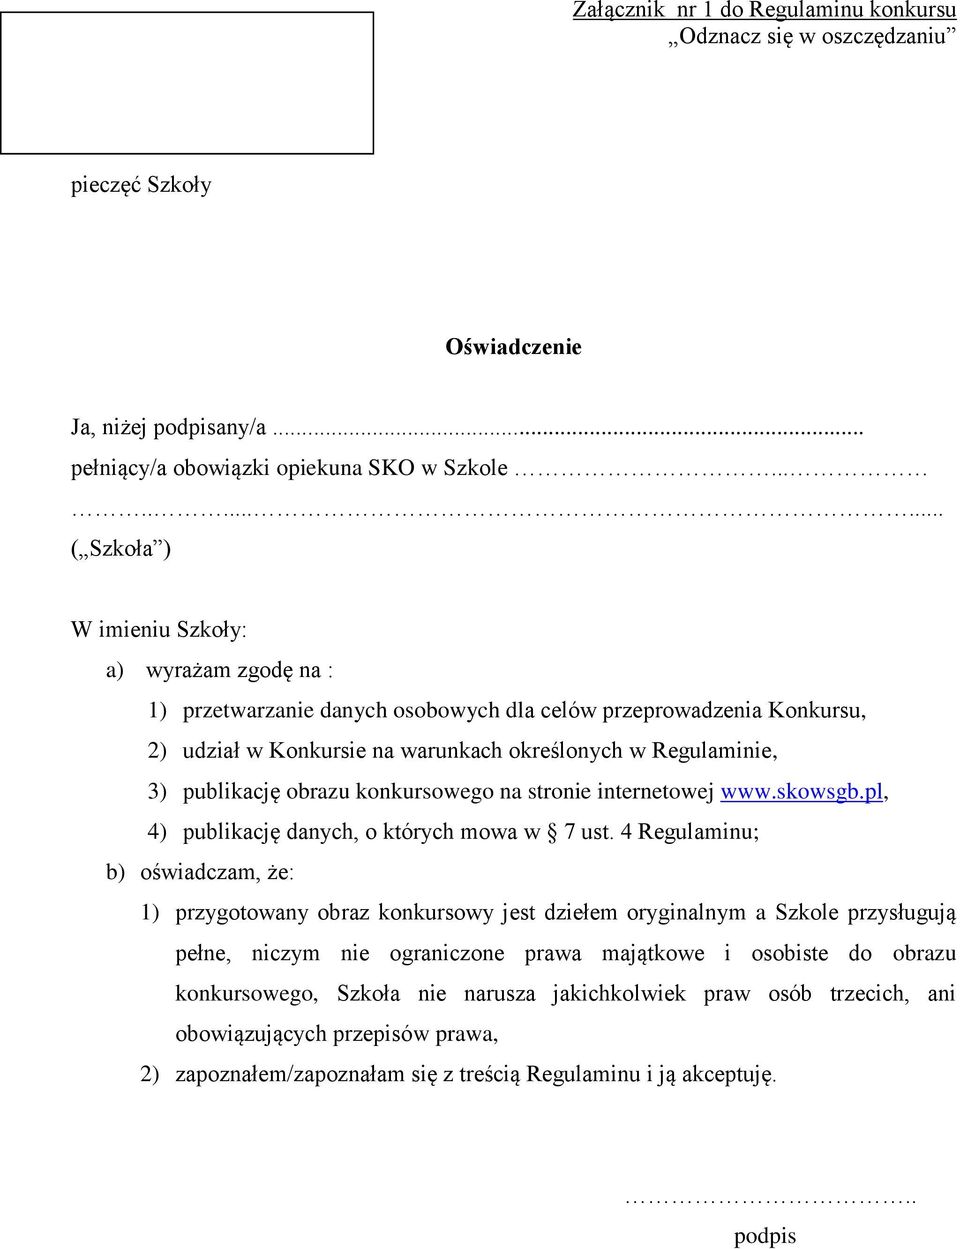 publikację obrazu konkursowego na stronie internetowej www.skowsgb.pl, 4) publikację danych, o których mowa w 7 ust.